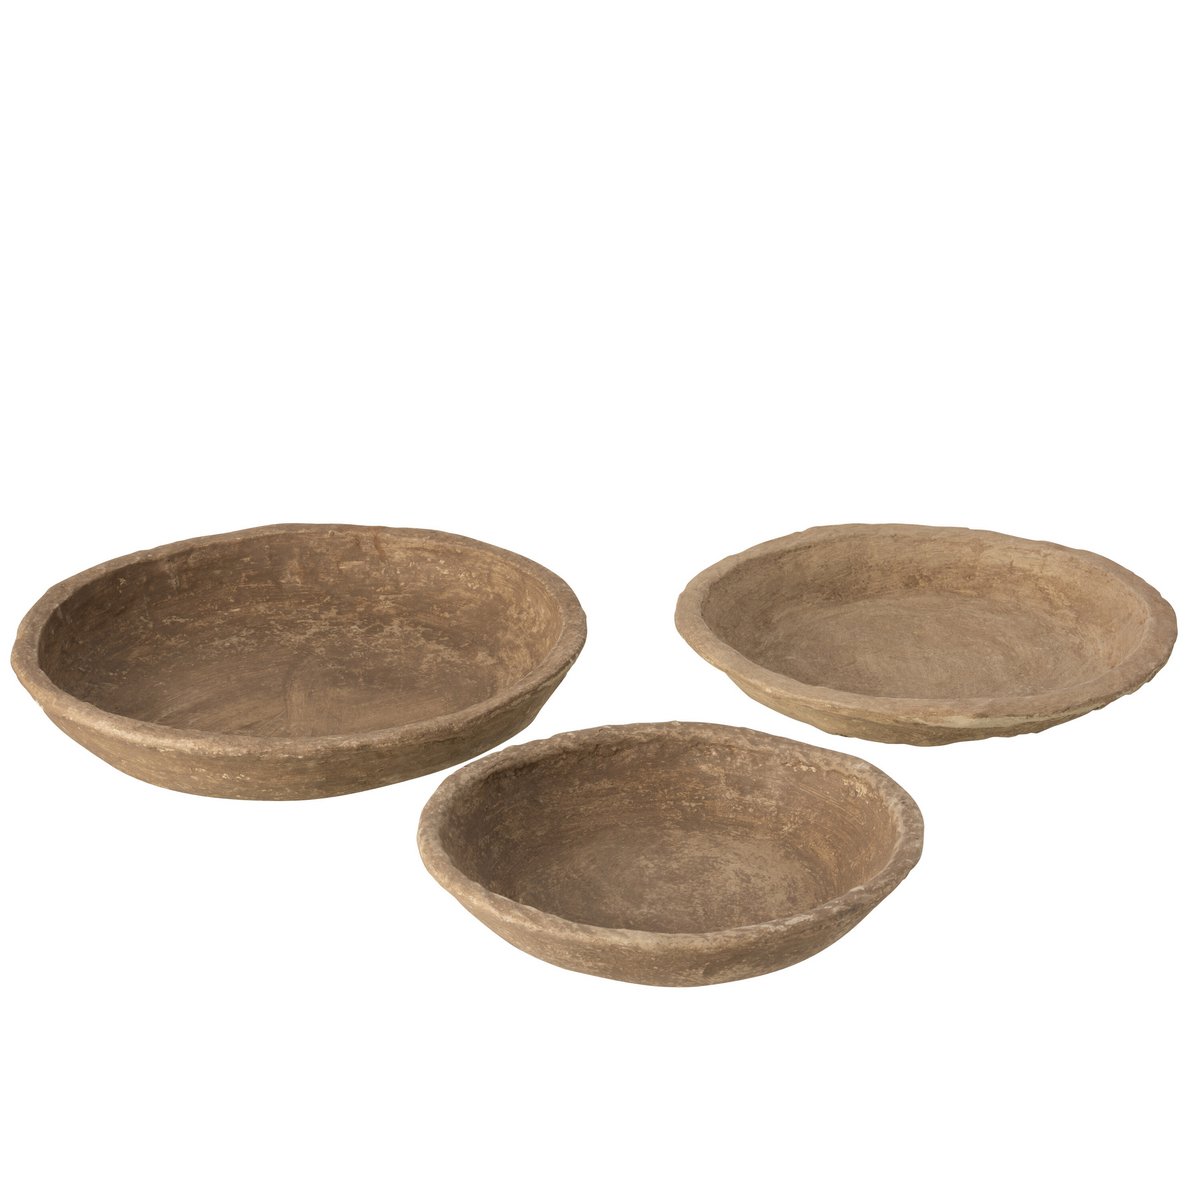 Set of 3 decor bowls, papier-mâché - brown